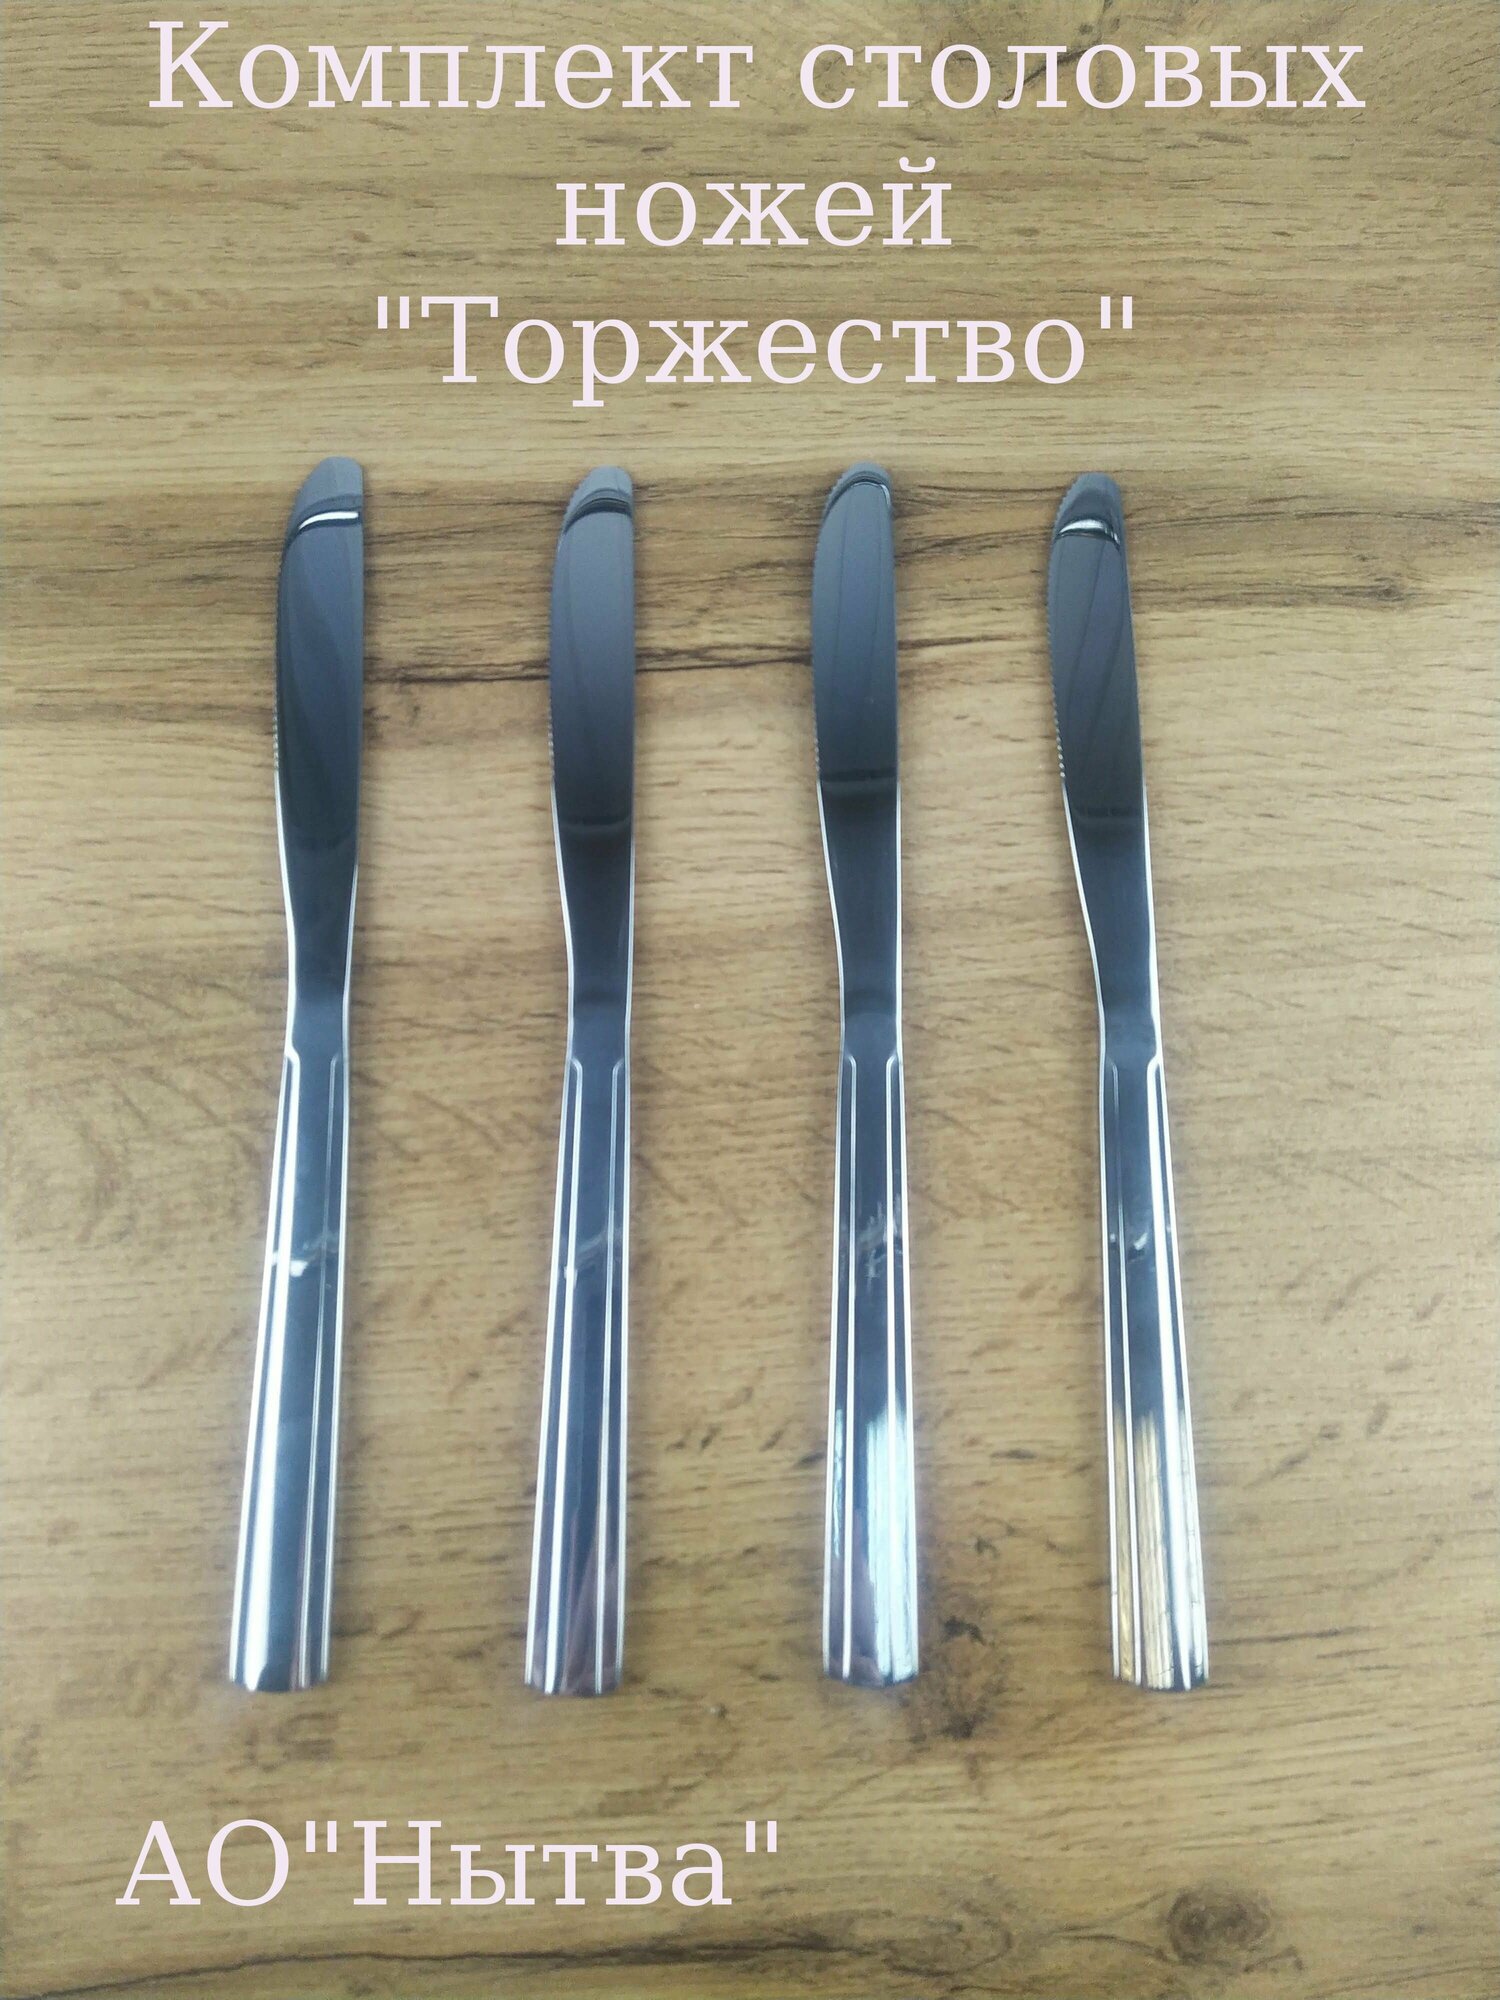 Нож столовый "Торжество" комплект 4 шт